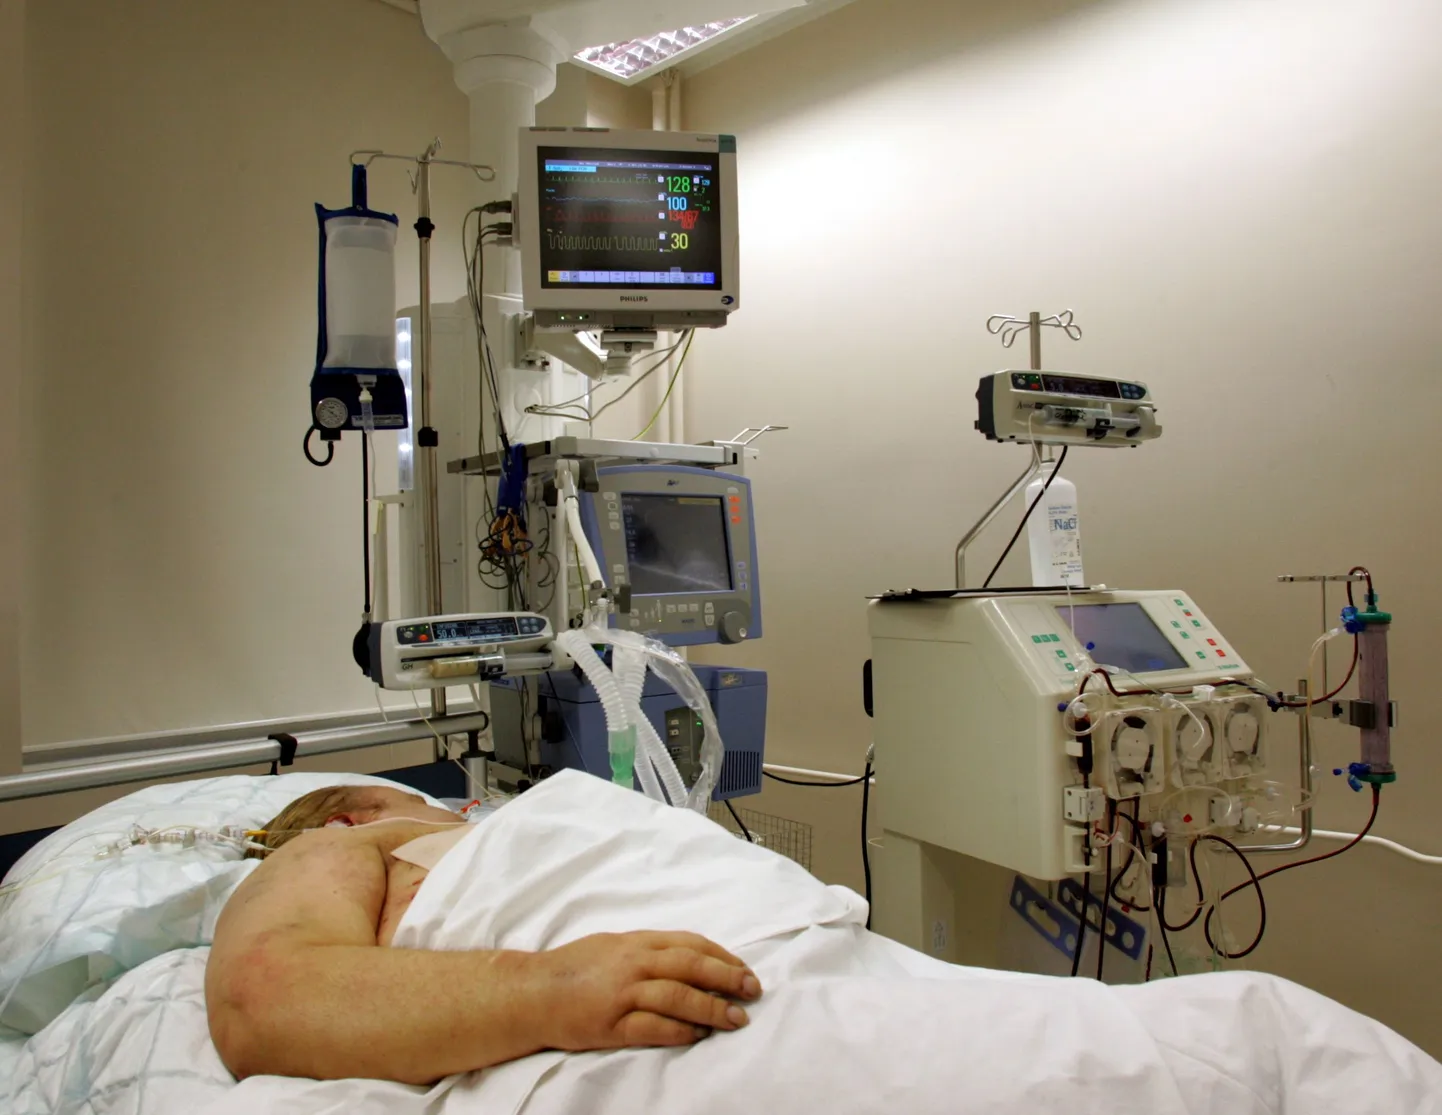 Глава объединения пациентов Эстонии Пилле Ильвес назвала новую схему оплаты больничного совершенно безответственной.